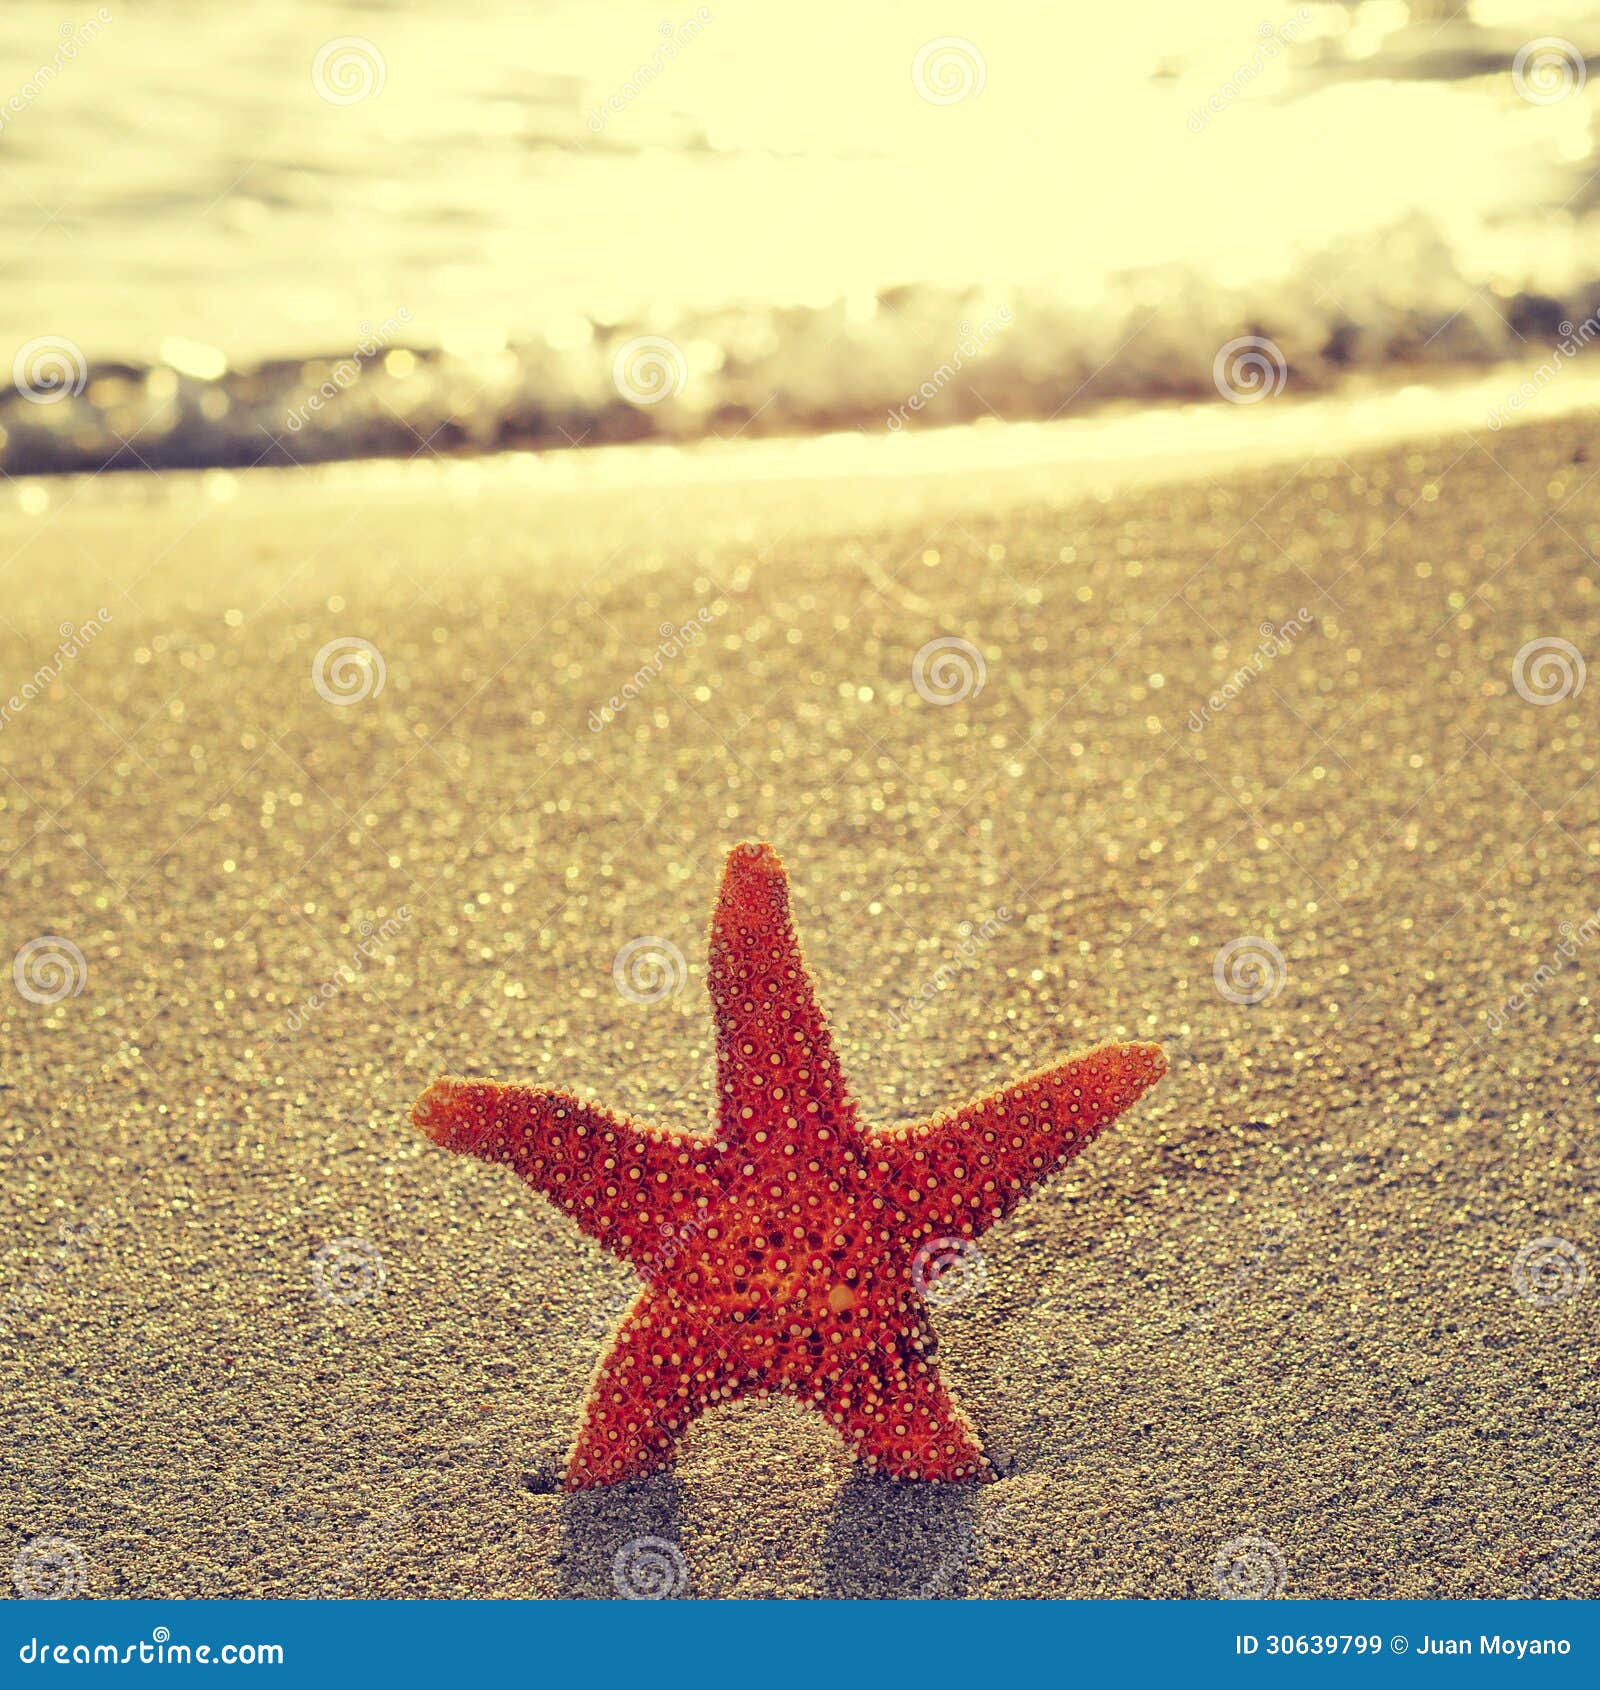 seastar on the shore of a beach